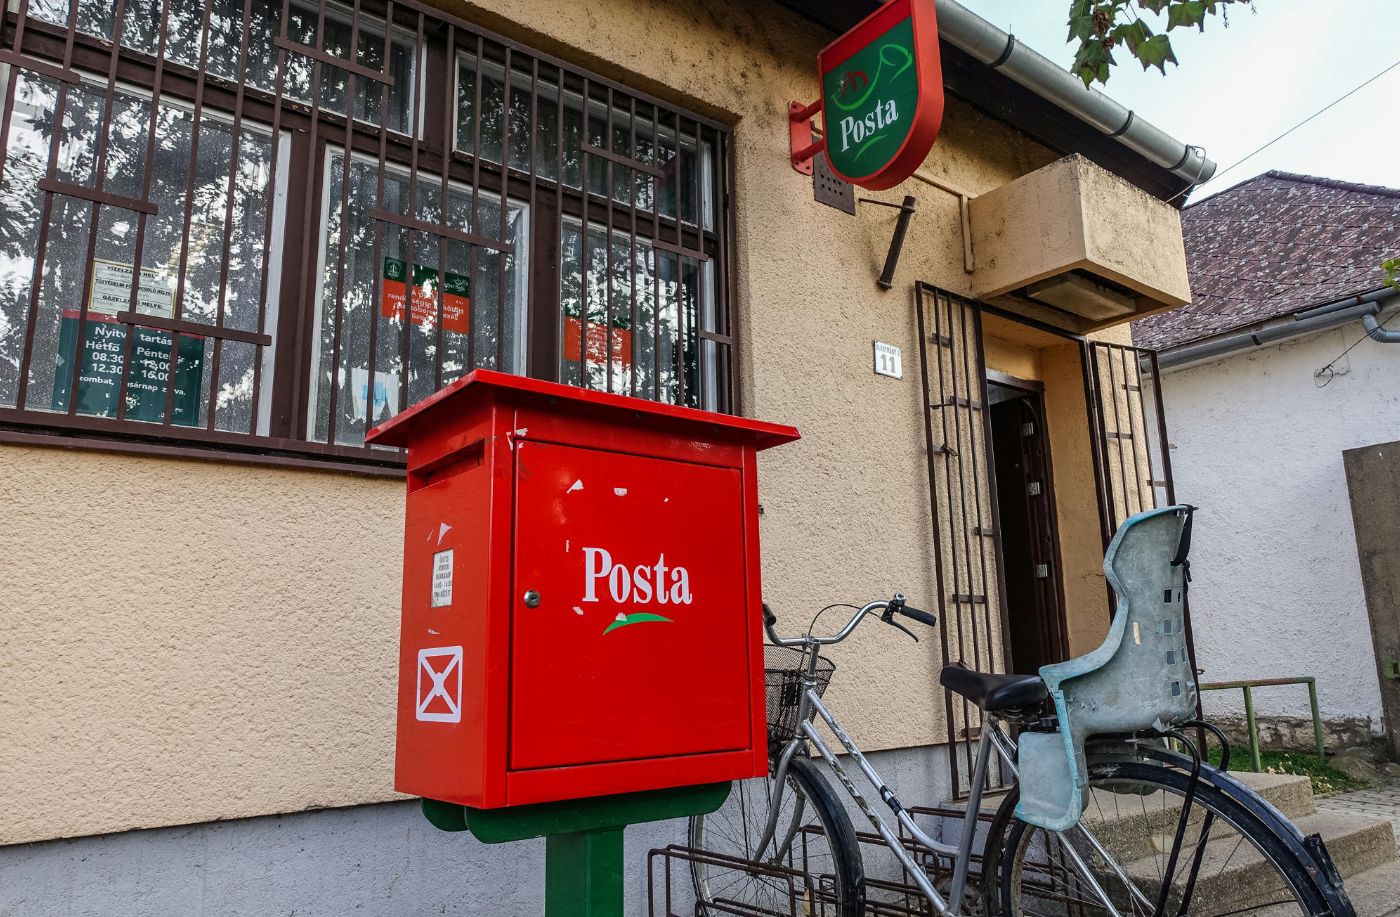 765 ezer forintot fizet a Posta azoknak a kistelepülési vállalkozónak, akik átvállalják a helyi posta feladatait